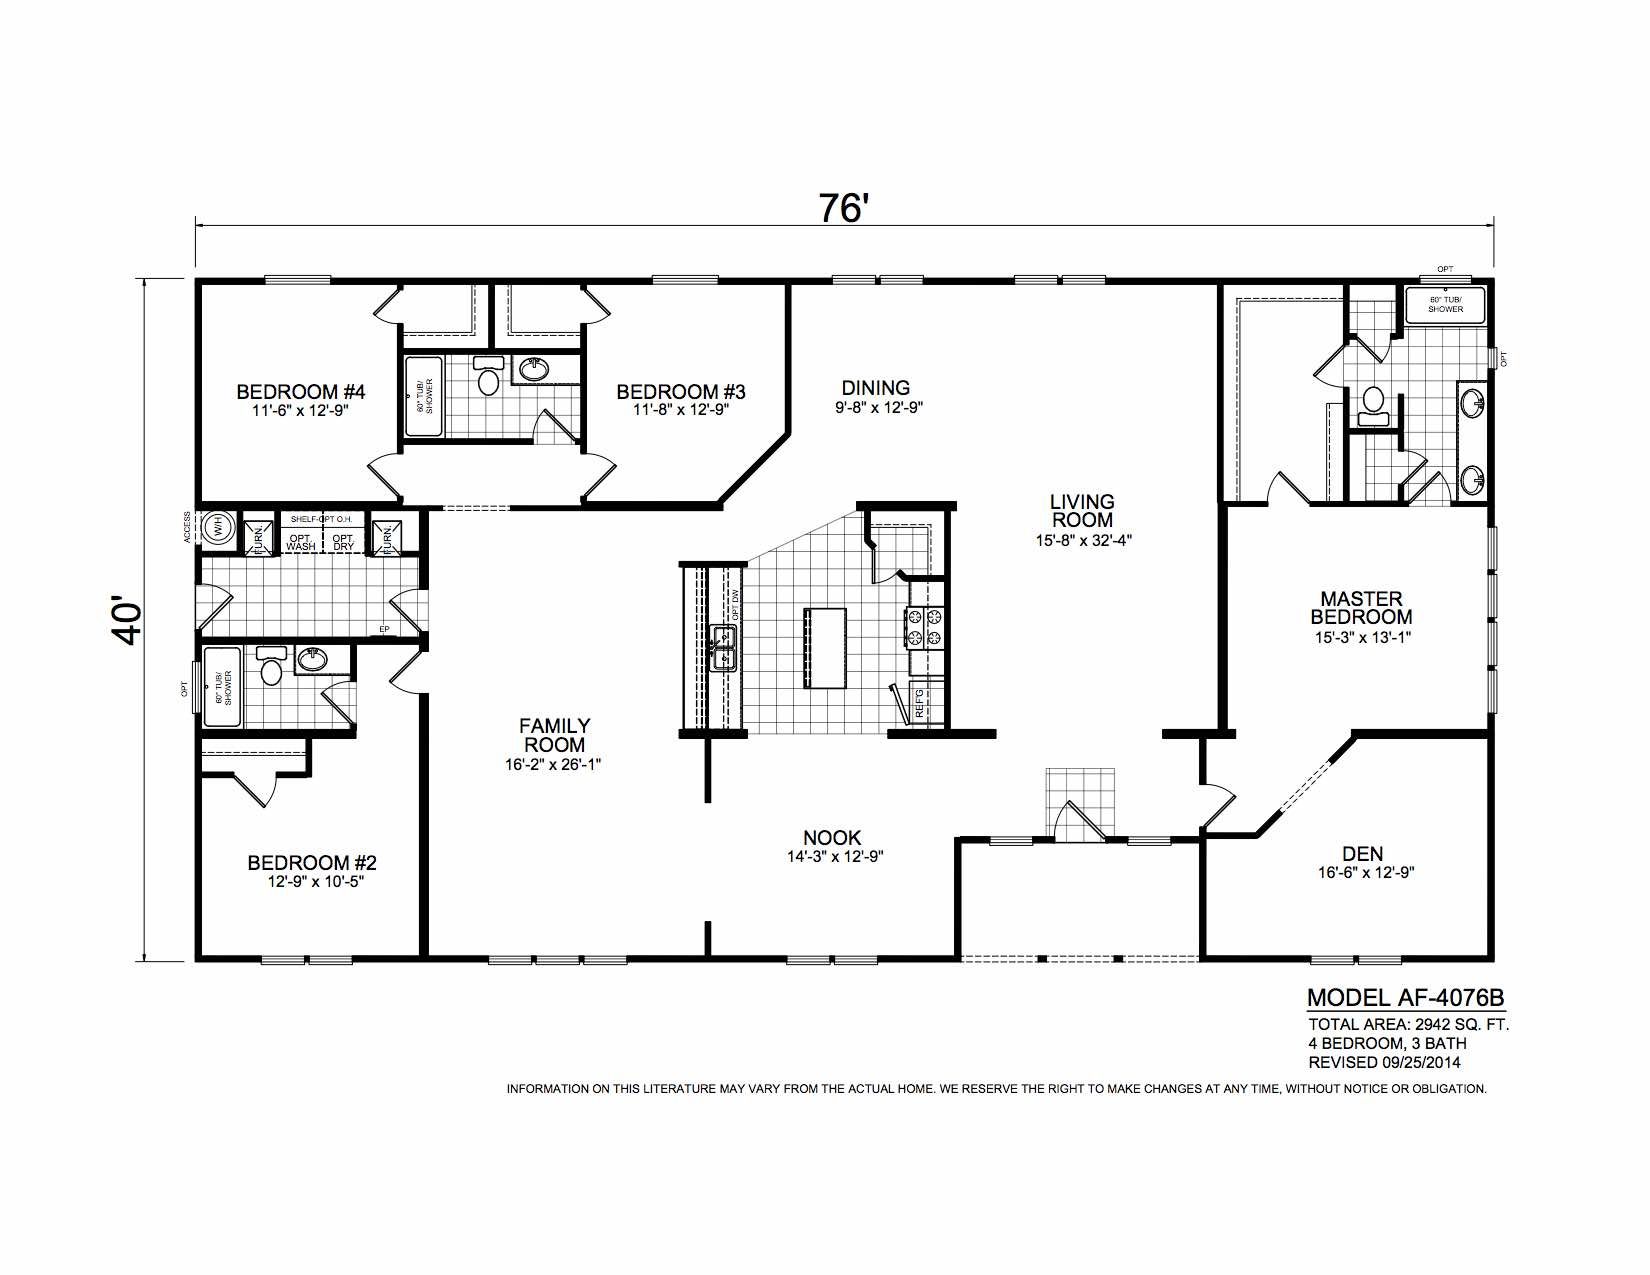 Homes Direct Modular Homes - Model AF4076B - Floorplan